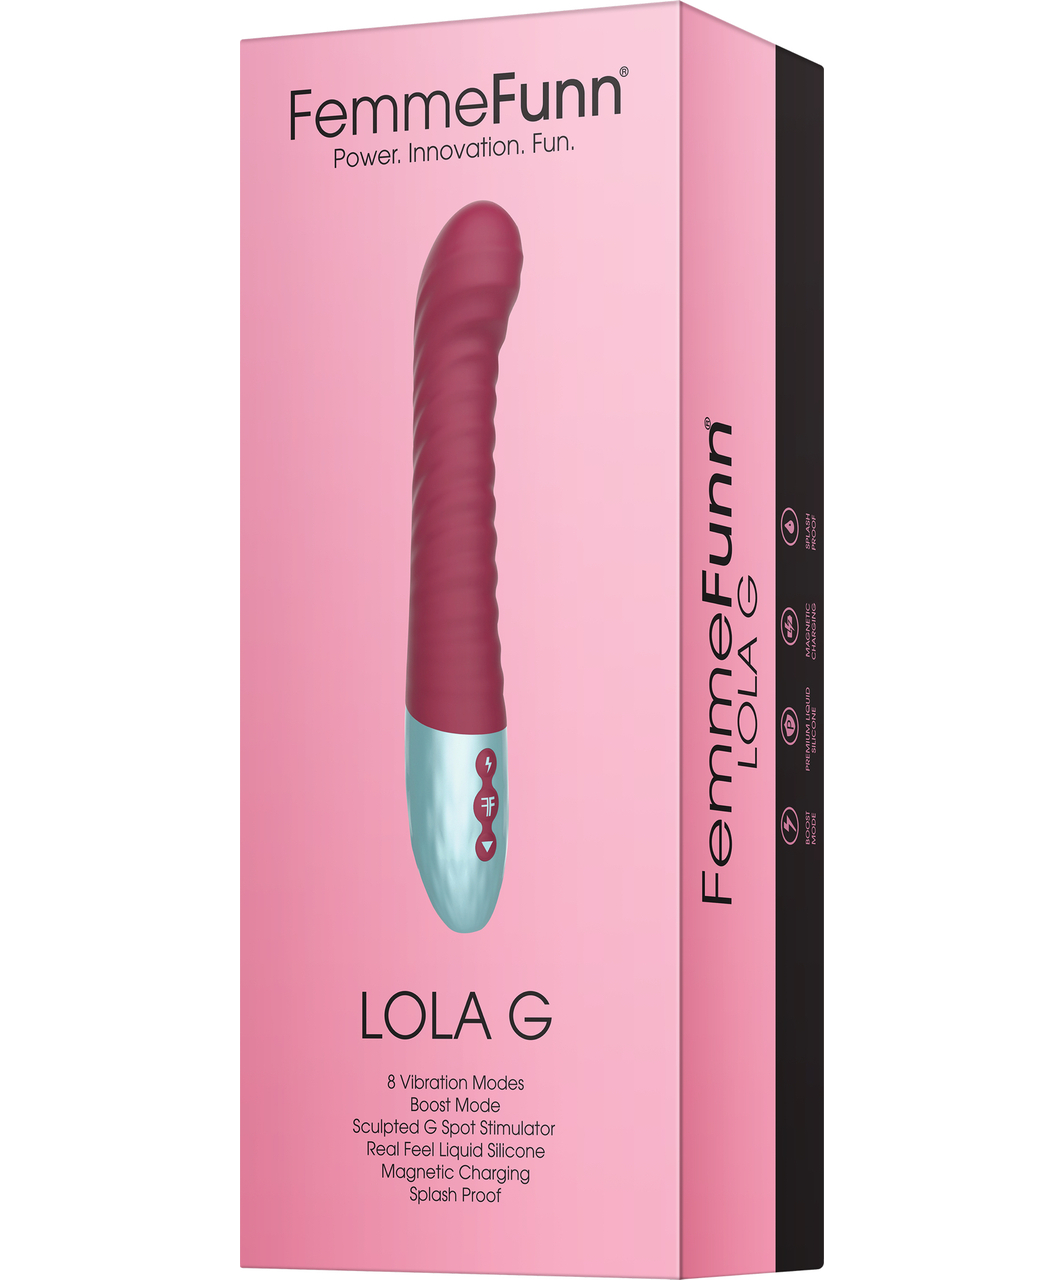 FemmeFunn Lola G vibrator